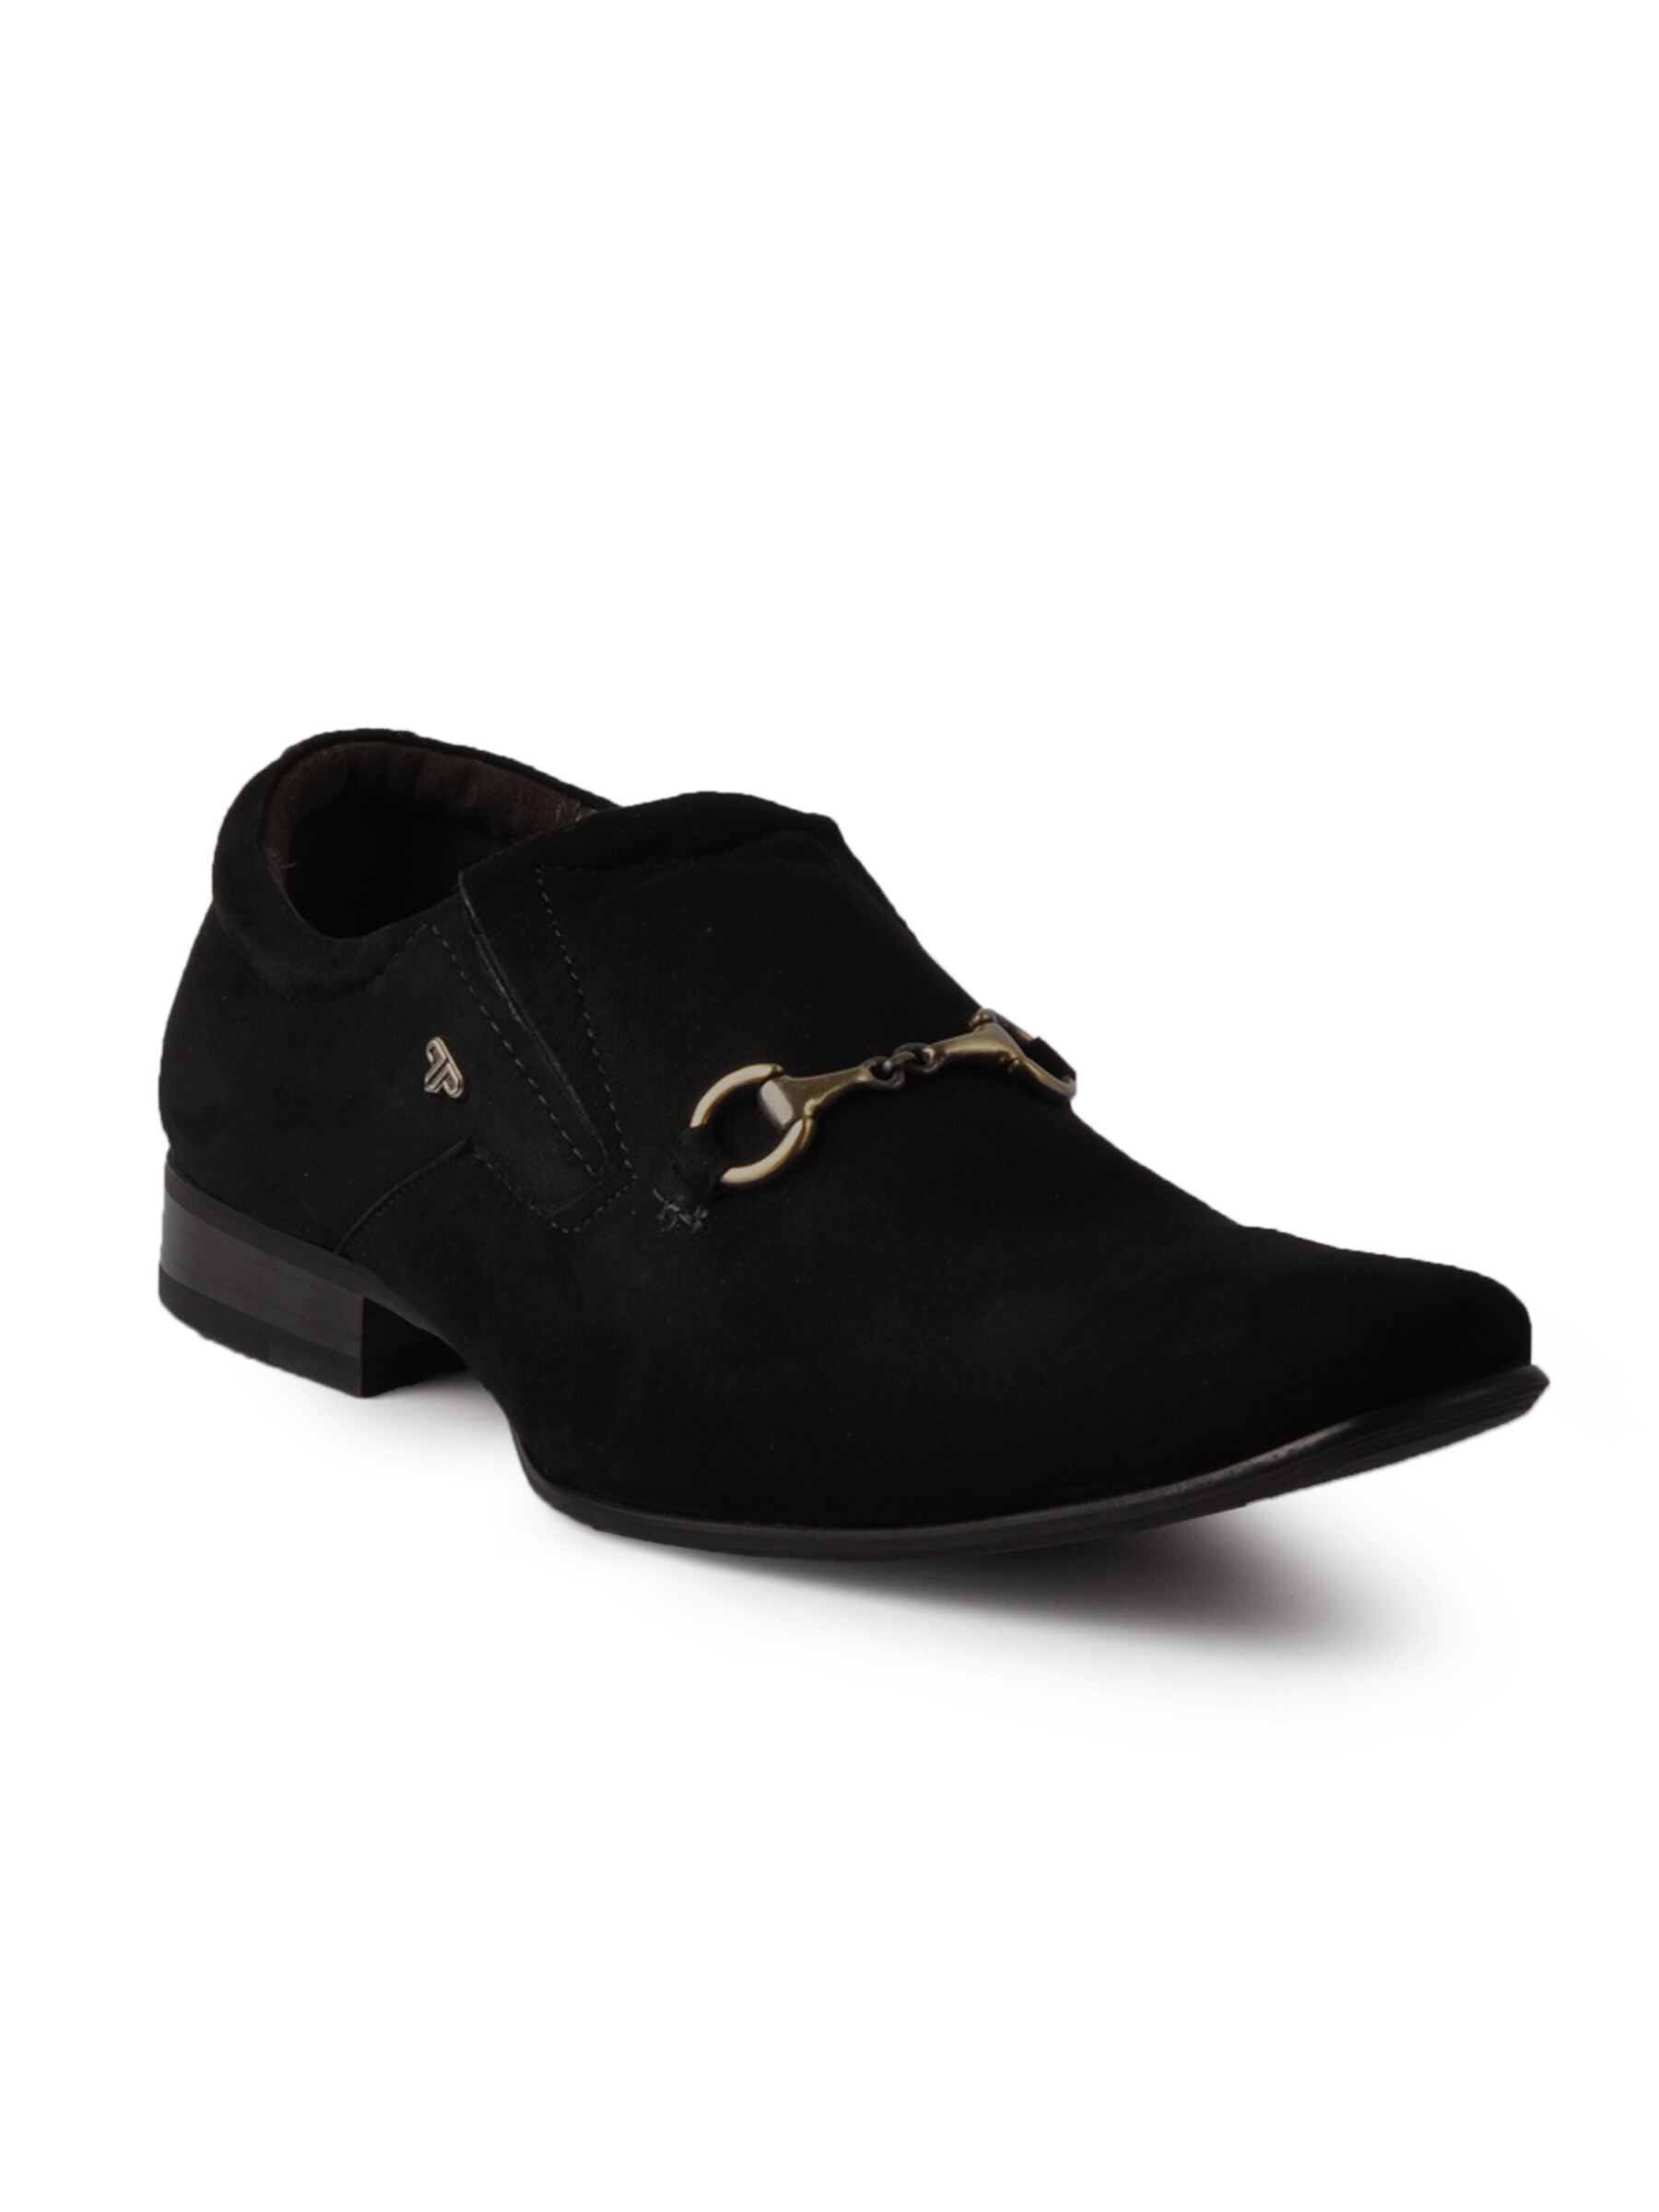 Provogue Men Casual Black Shoes